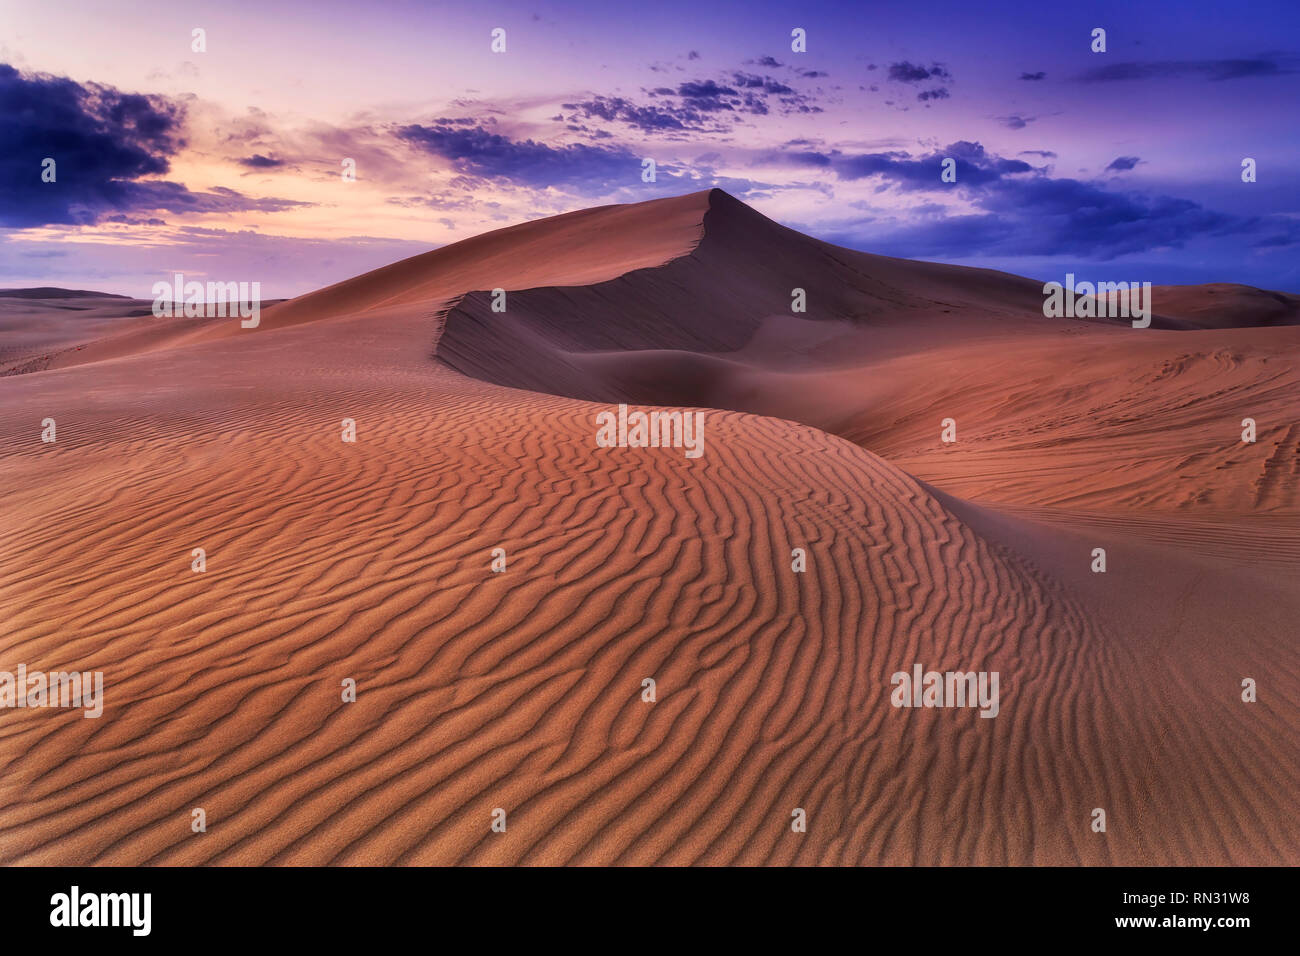 Remote leer leblose Sandwüste bei Sonnenaufgang unter dunklen bewölkten Himmel mit Wind erodiert Muster auf Dünen Oberfläche bilden Land Wellen. Stockfoto